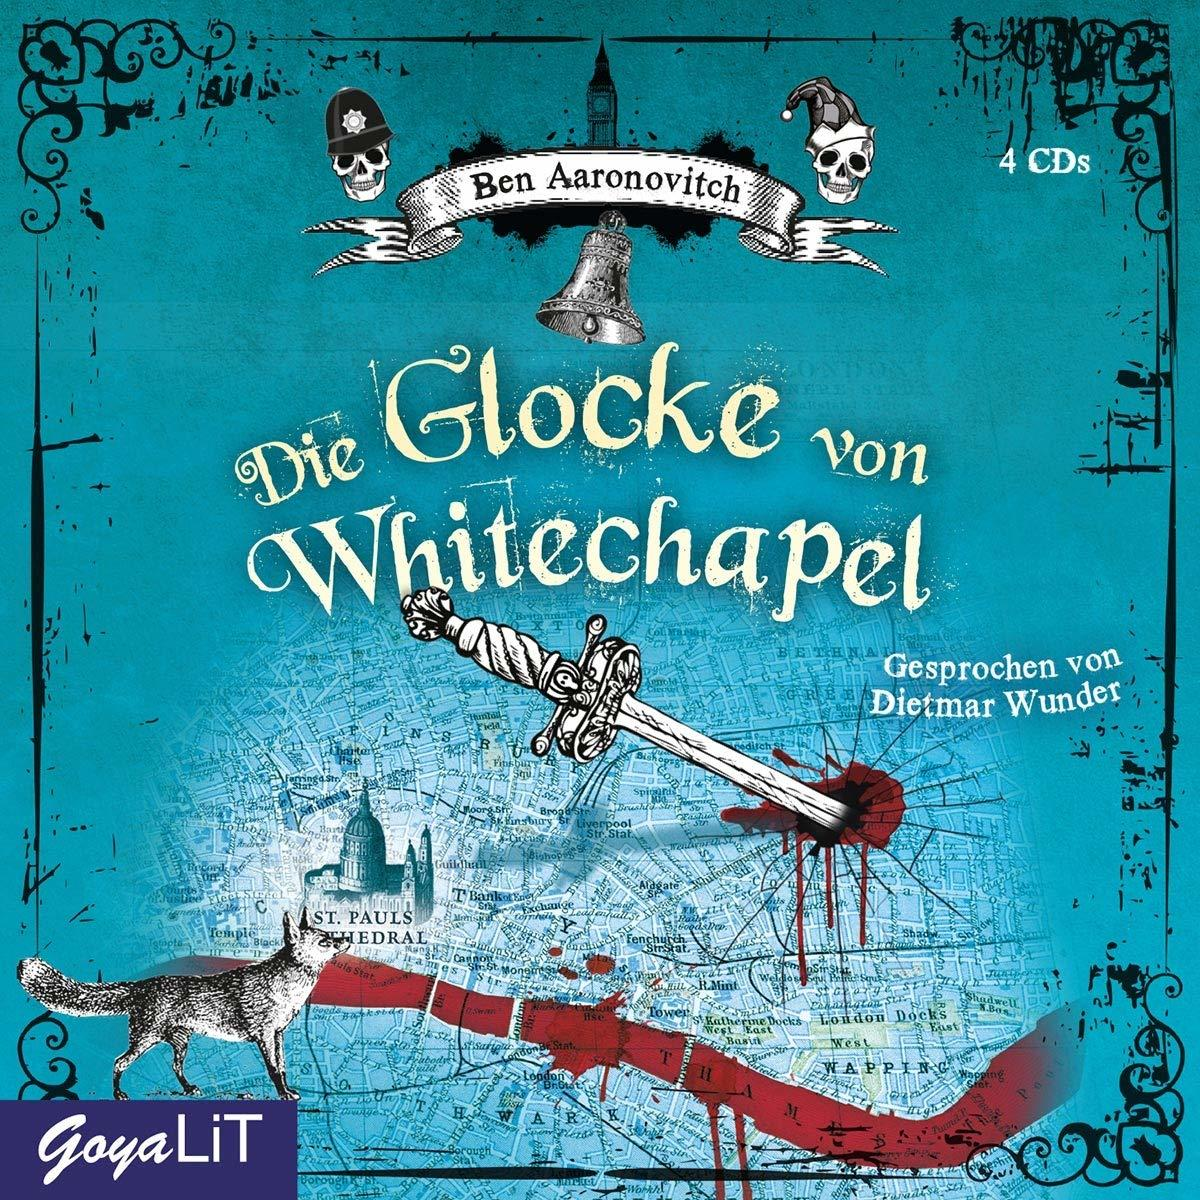 Ben Aaronovitch - Die (CD) Glocke Whitechapel - Von